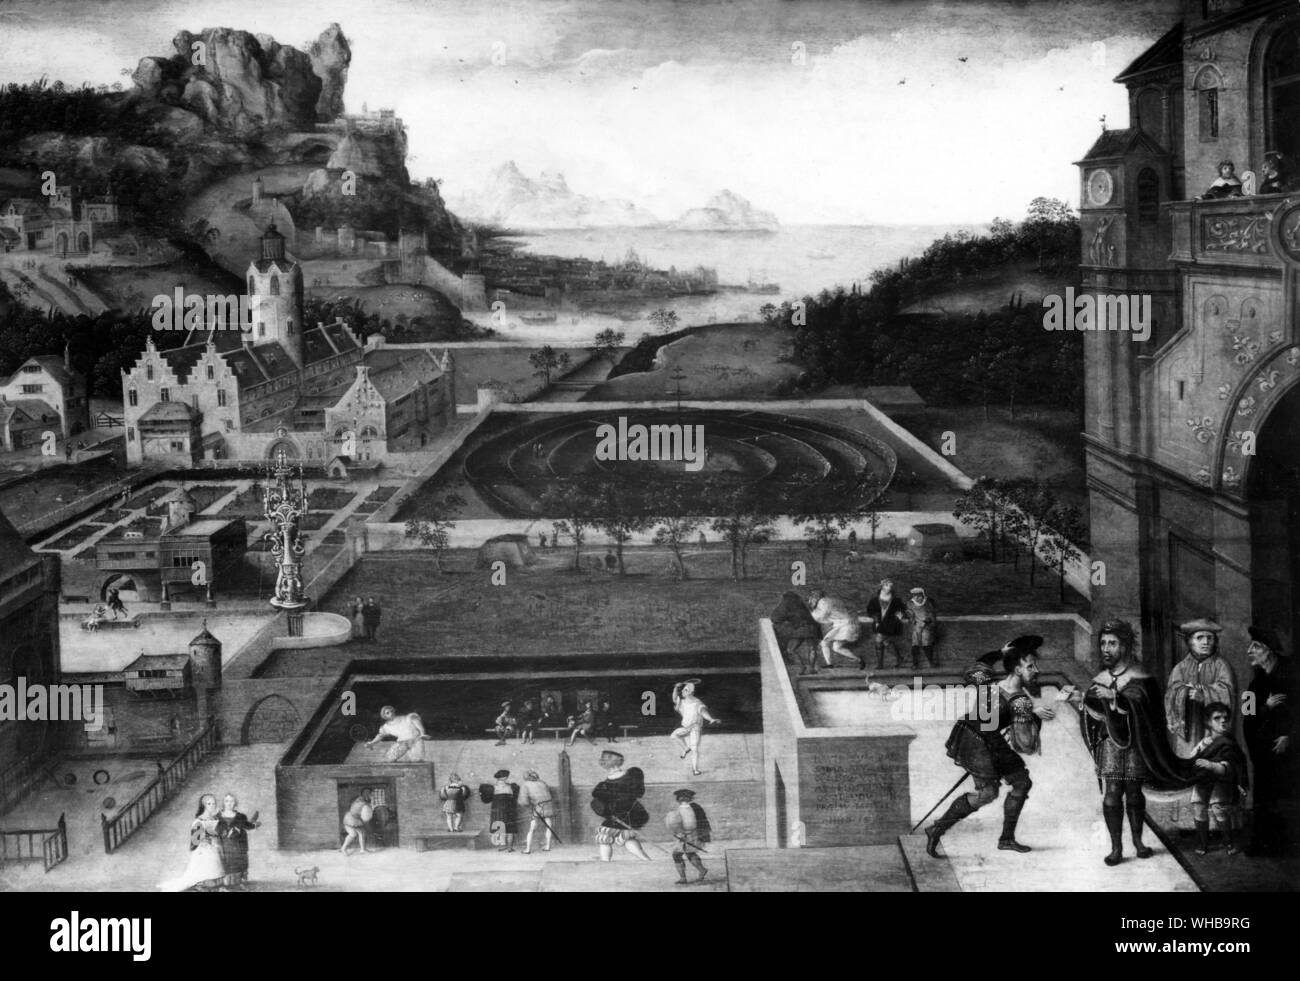 Tennis, der Art, die ich in Amboise, aus einem Italienische Malerei gespielt von Francois. 16. Jahrhundert Gericht Szene, die die Geschichte von David und Batseba. Stockfoto